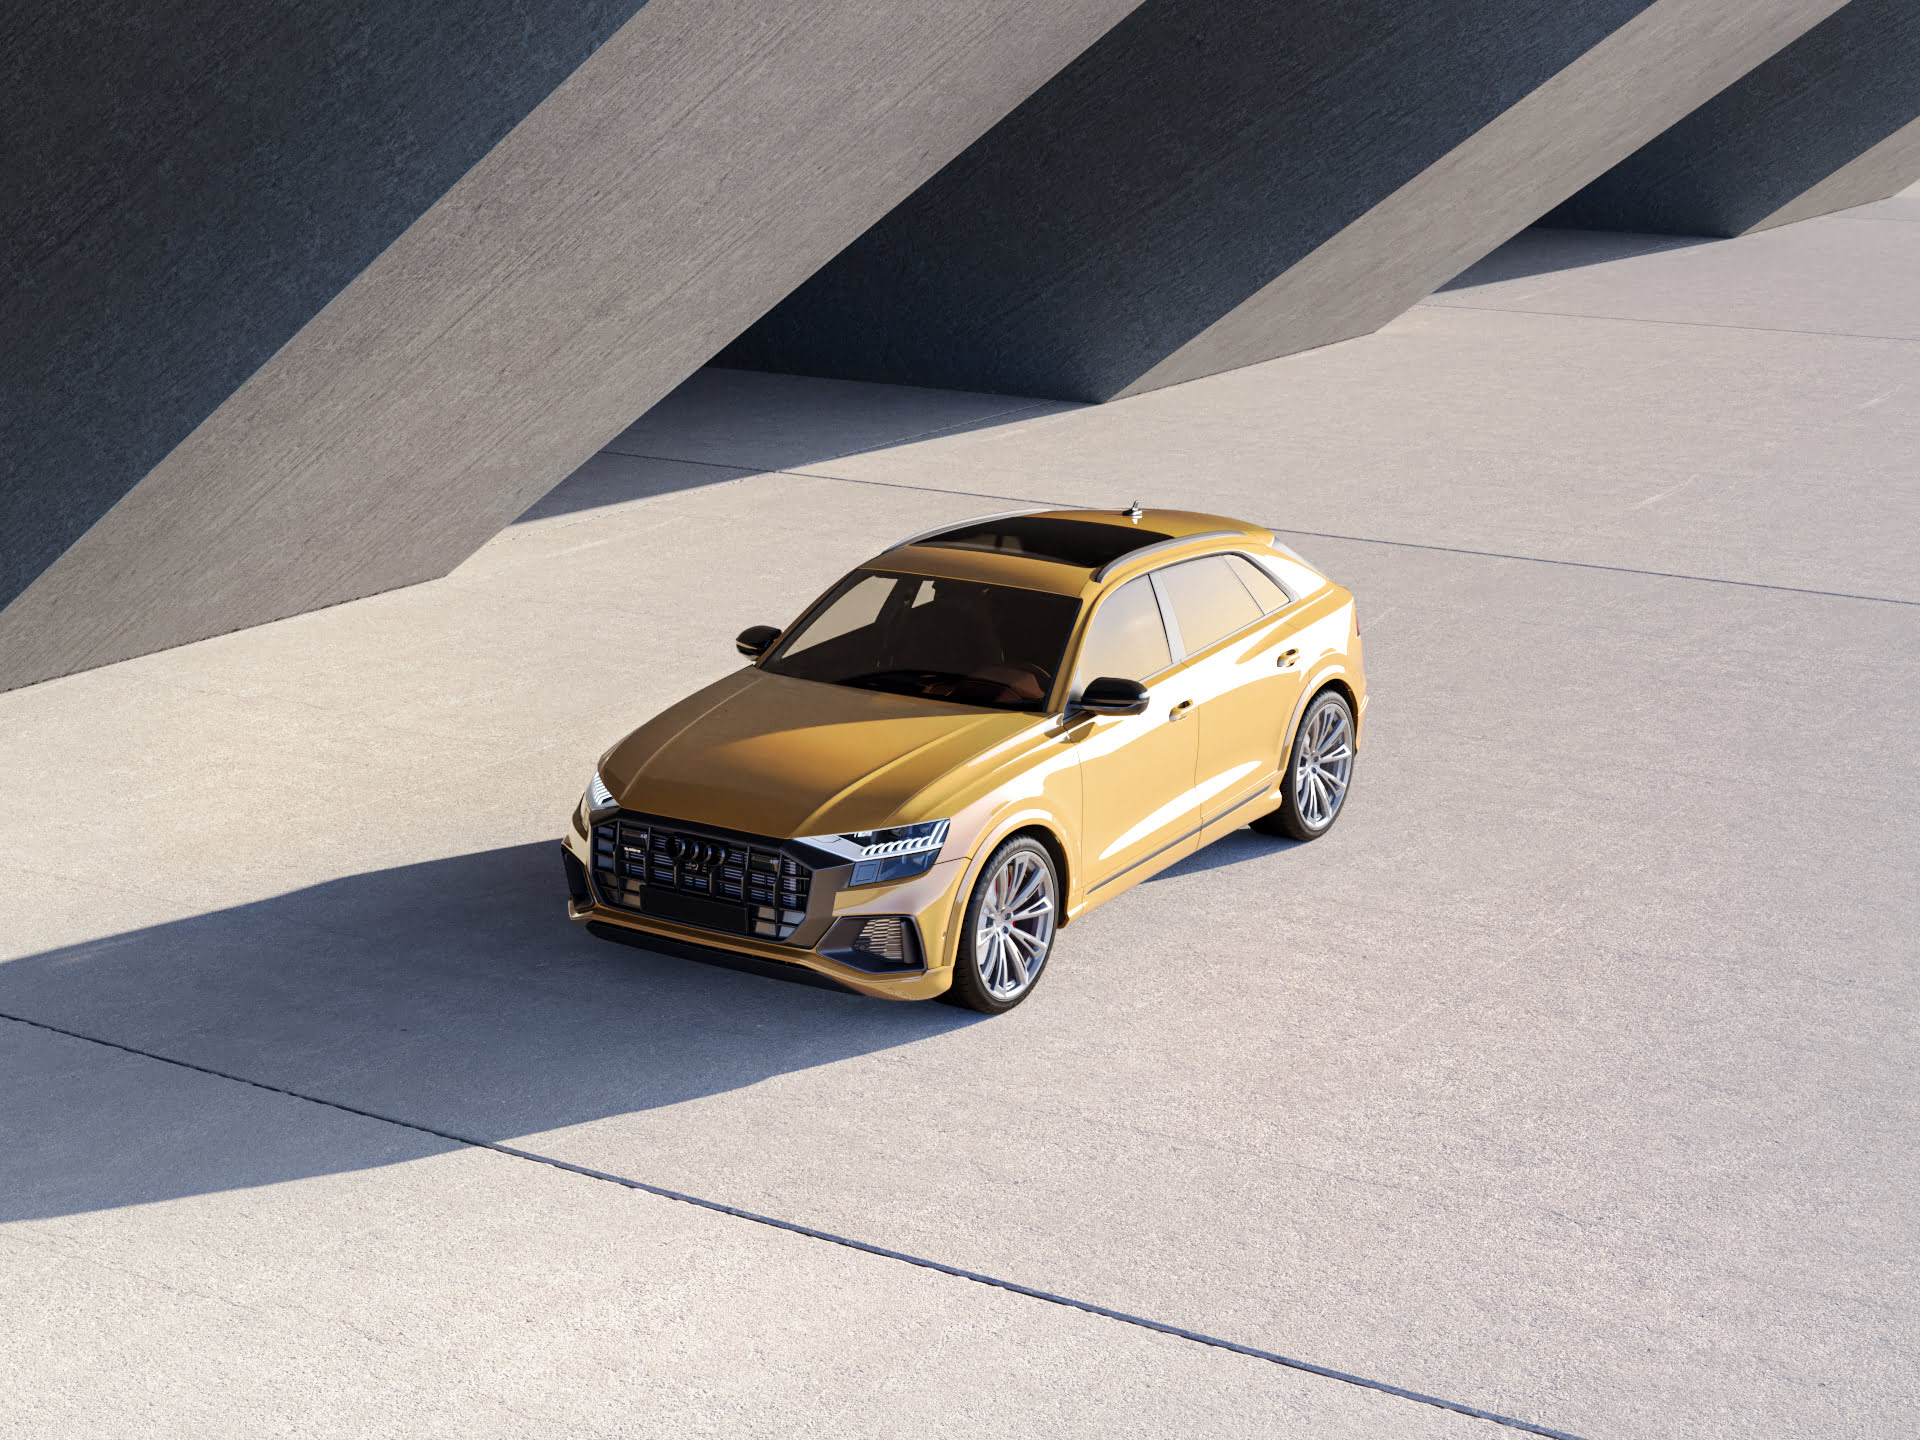 Produktvisualisierung eines gelben Audi bei Sonnenschein